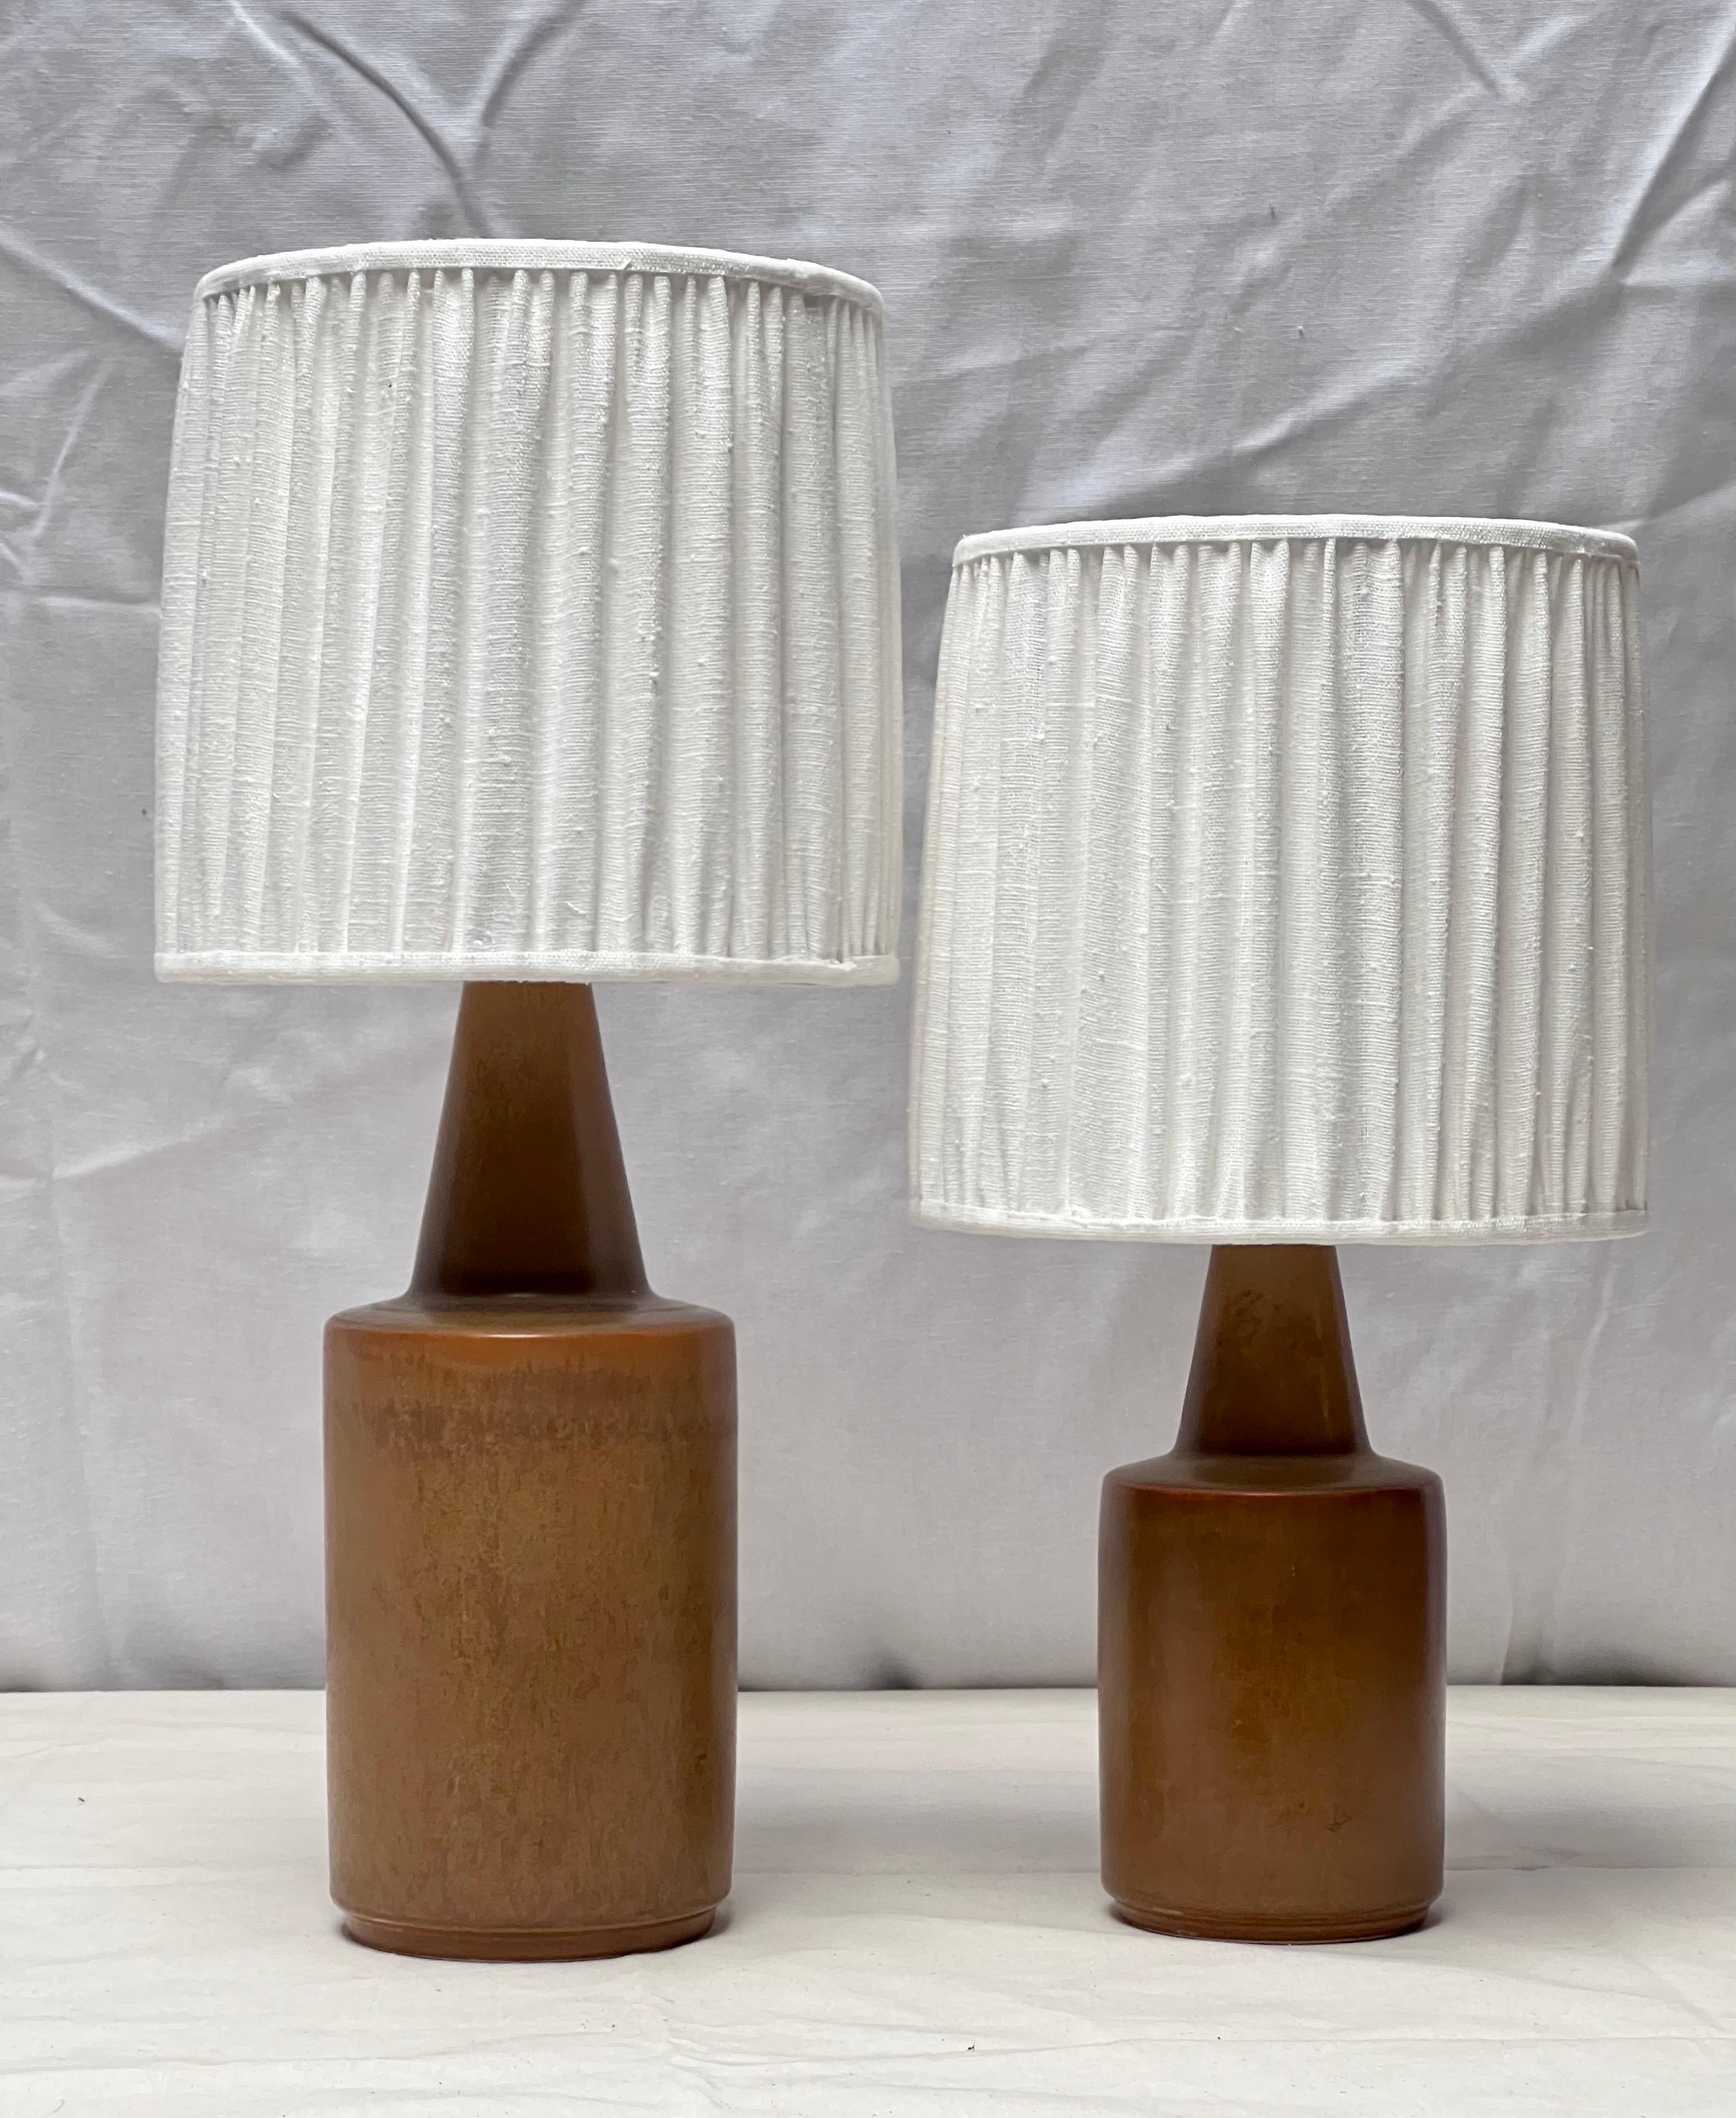 Zwei Søholm Keramik Tischlampen aus Ton mit verschiedenen Schattierungen von braun / orange. Dies ist das gleiche Modell mit einer anderen Höhe.  Wir haben die Lampenschirme durch neue, handgefertigte belgische Leinenschirme und alle elektrischen